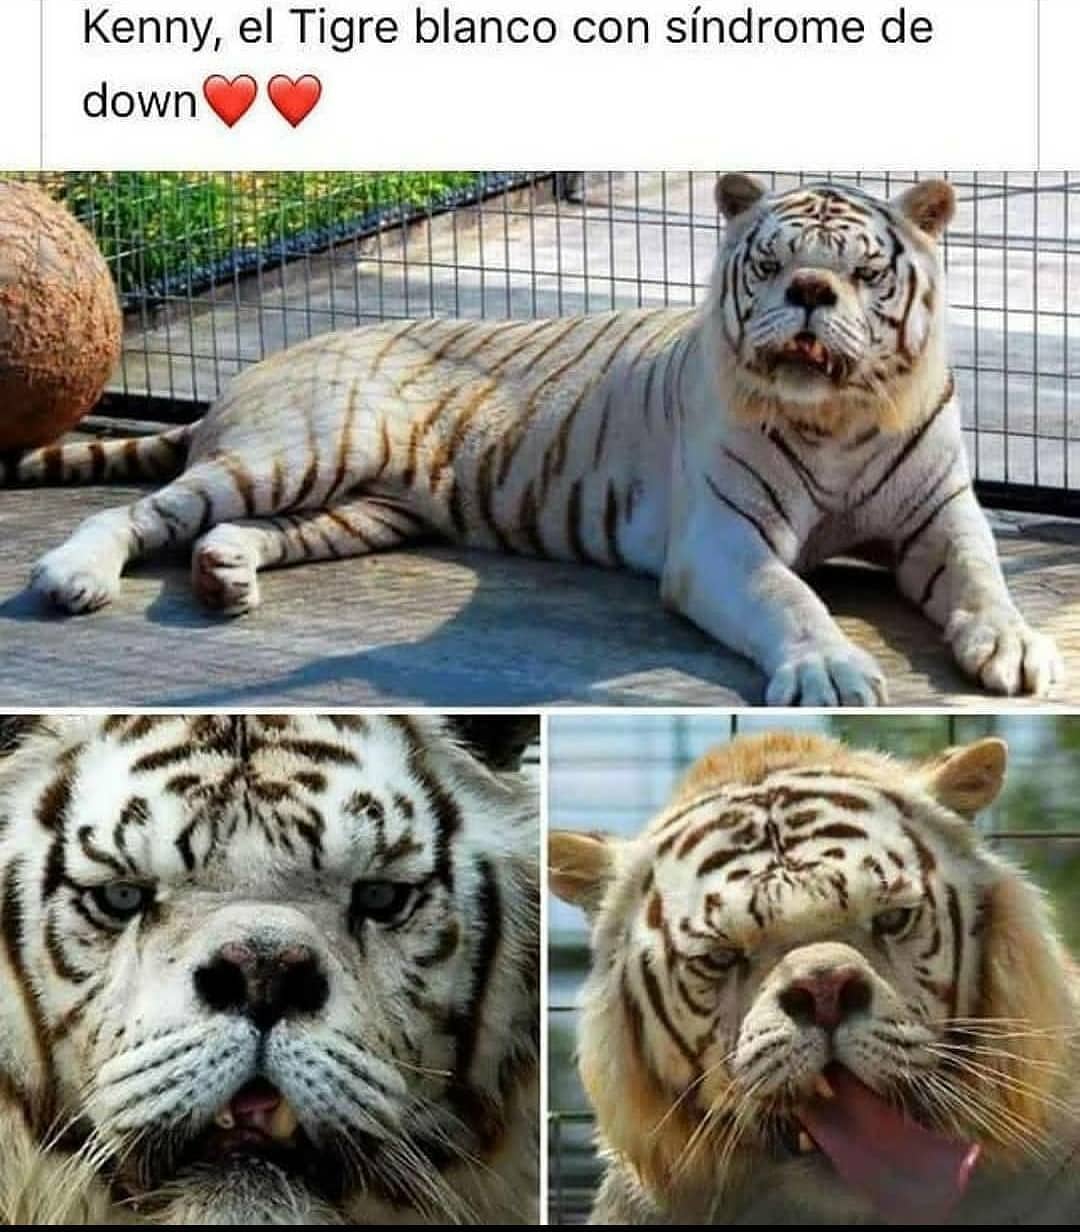 Kenny, el tigre blanco con síndrome de down.